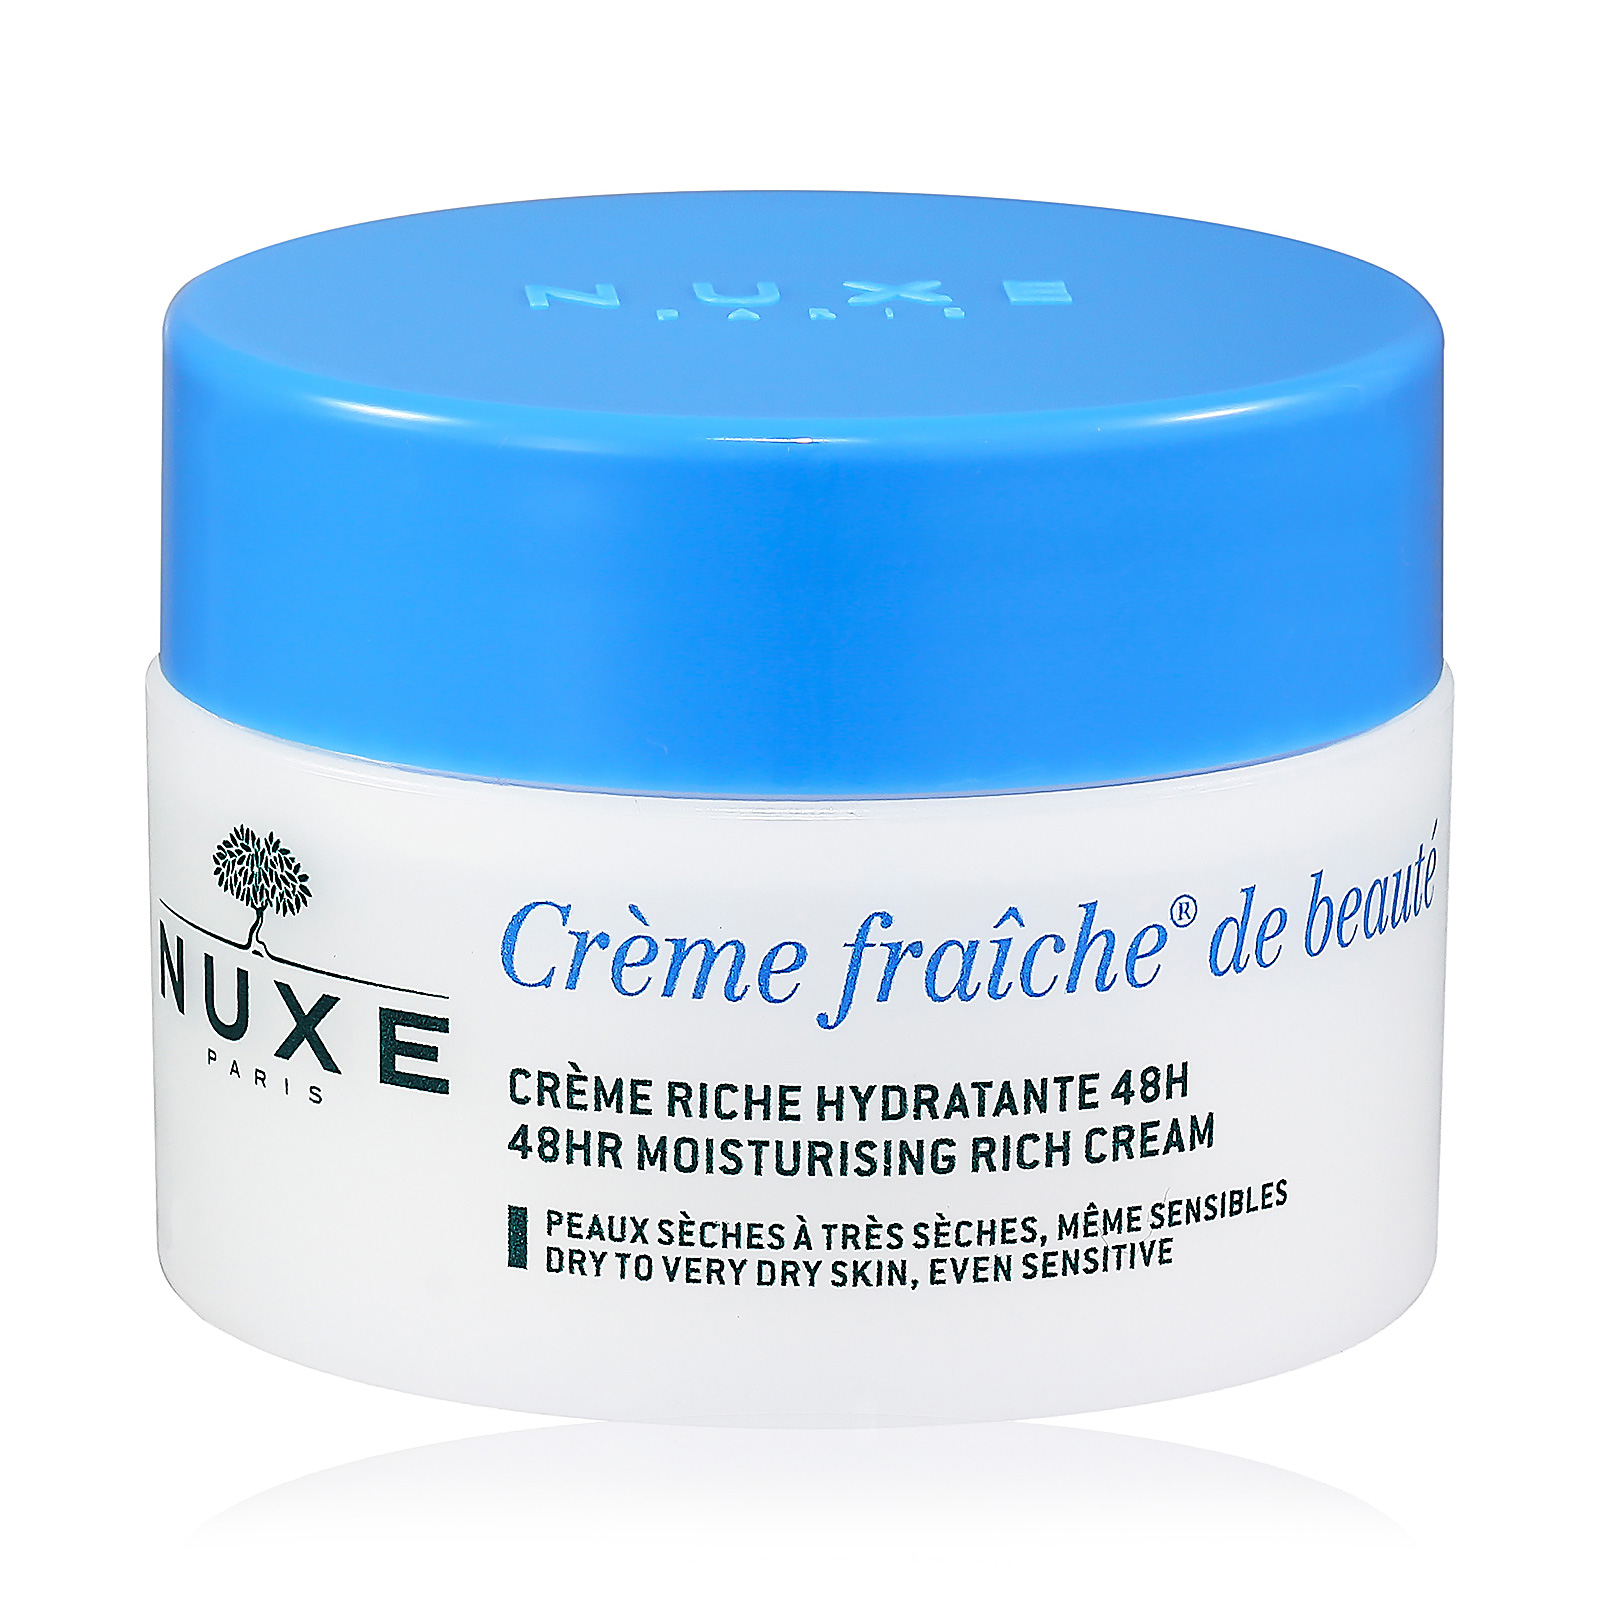 CHANEL Le Lift Creme Riche Moisturising Creams - 1.7oz for sale online